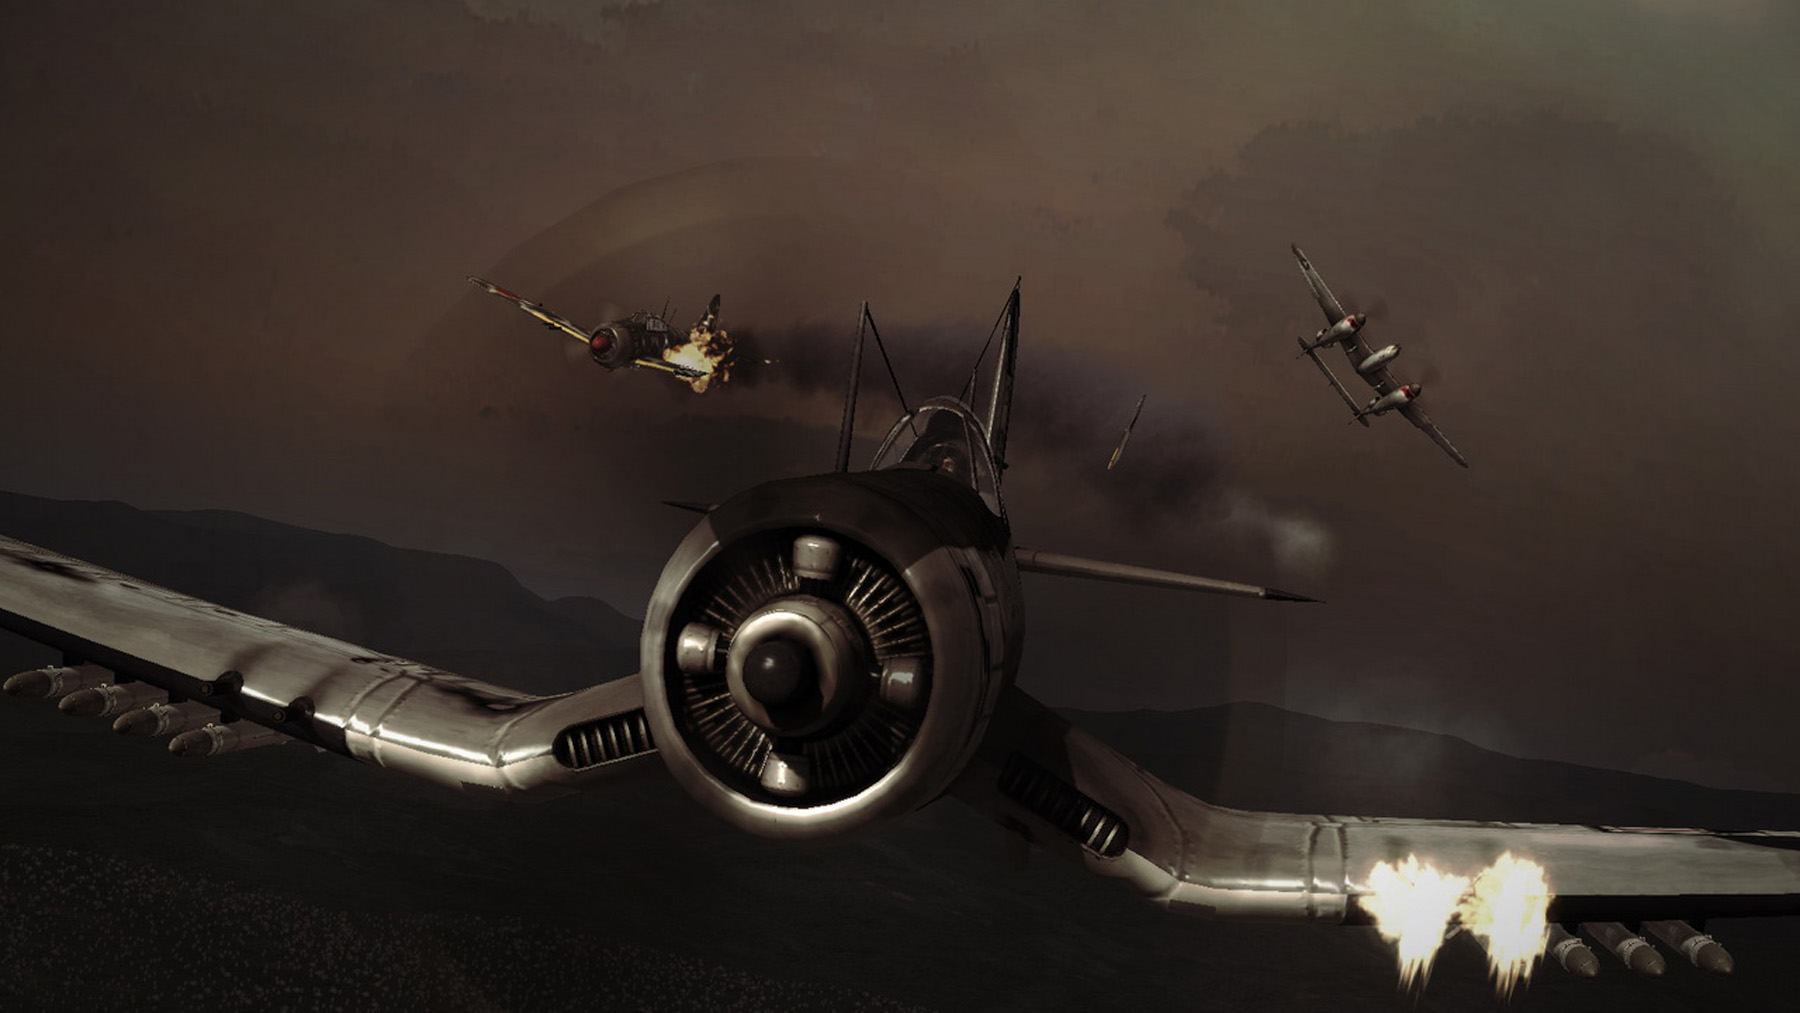 Damage Inc. Pacific Squadron WWII [MULTI5][L] /Mad Catz Interactive/ (2012) PC